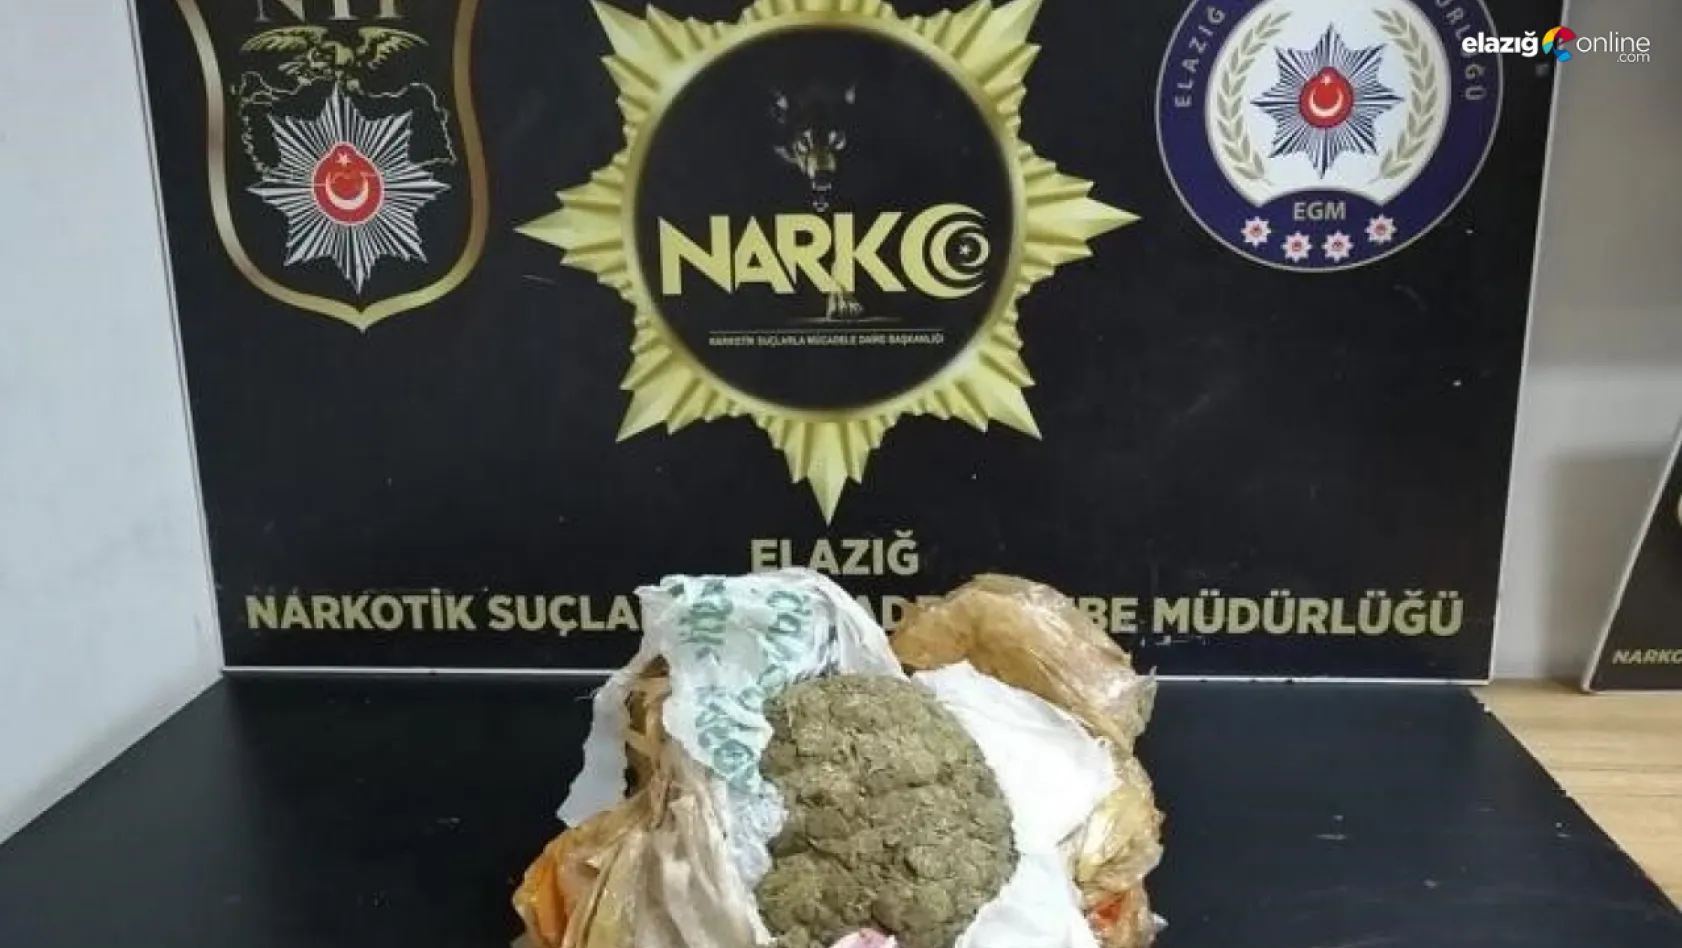 Elazığ Narko'dan skunk operasyonu!